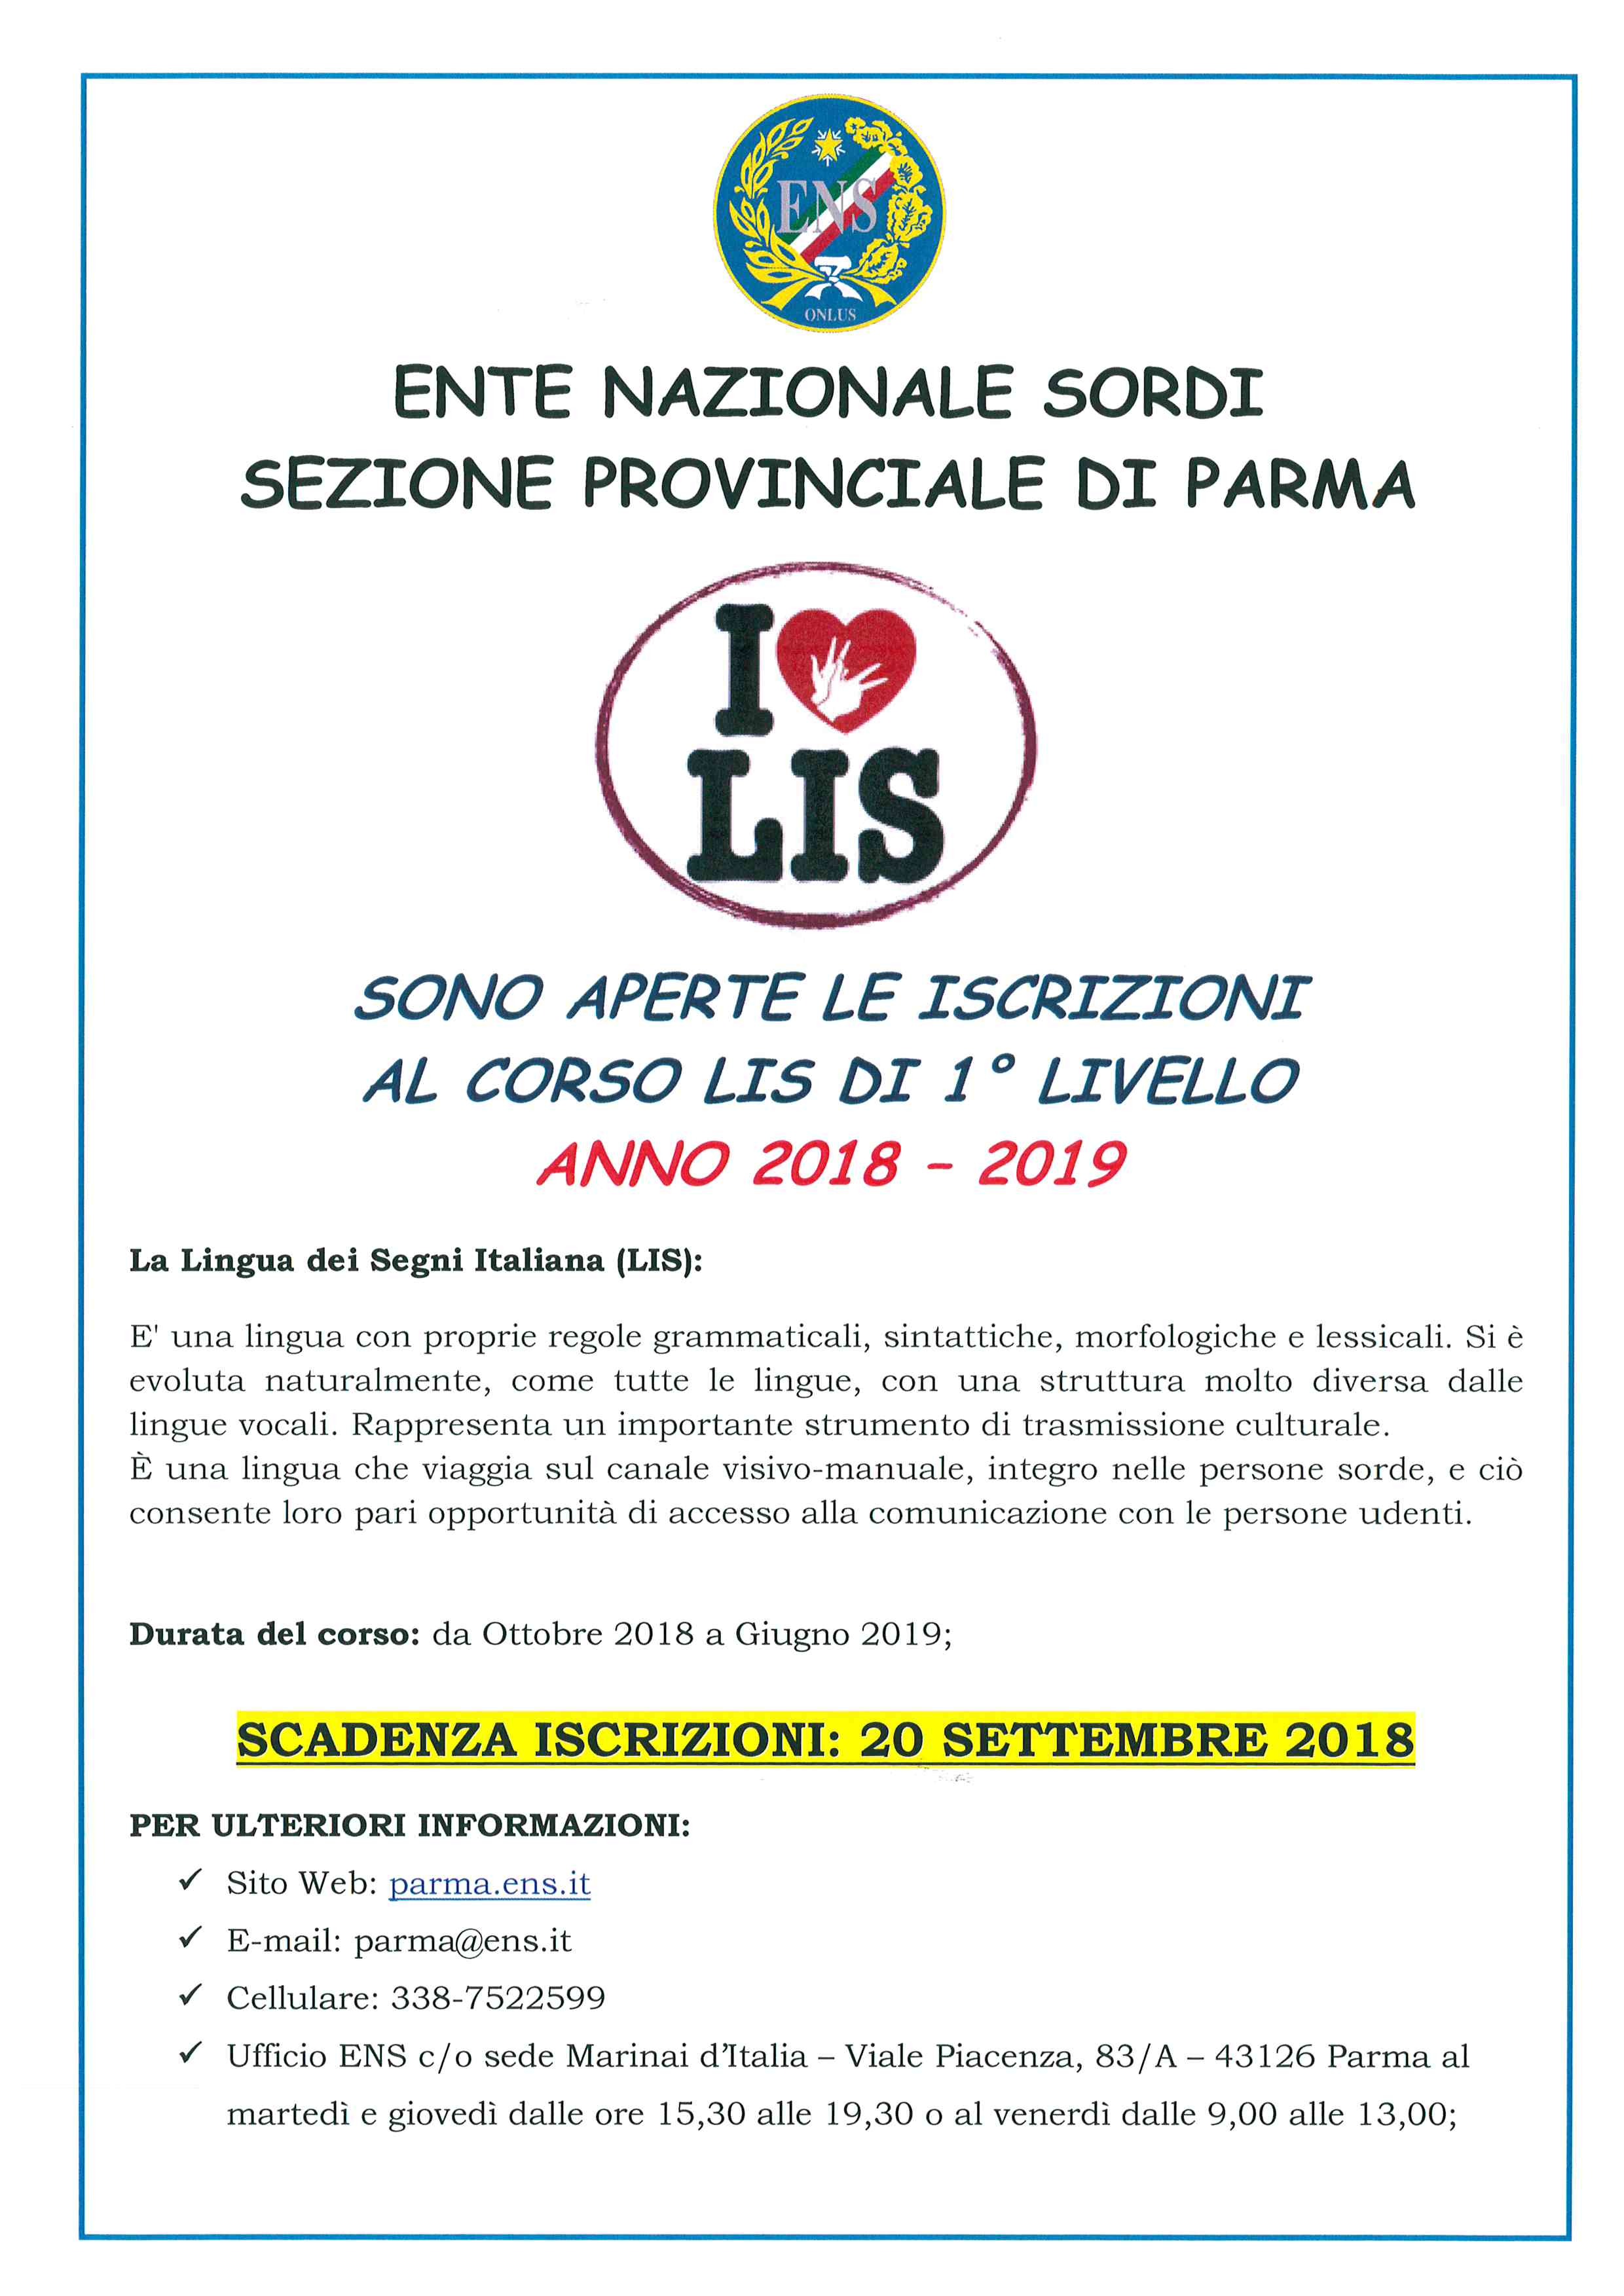 ENS di Parma Locandina 2018 2019 1 Livello AGGIORNATA